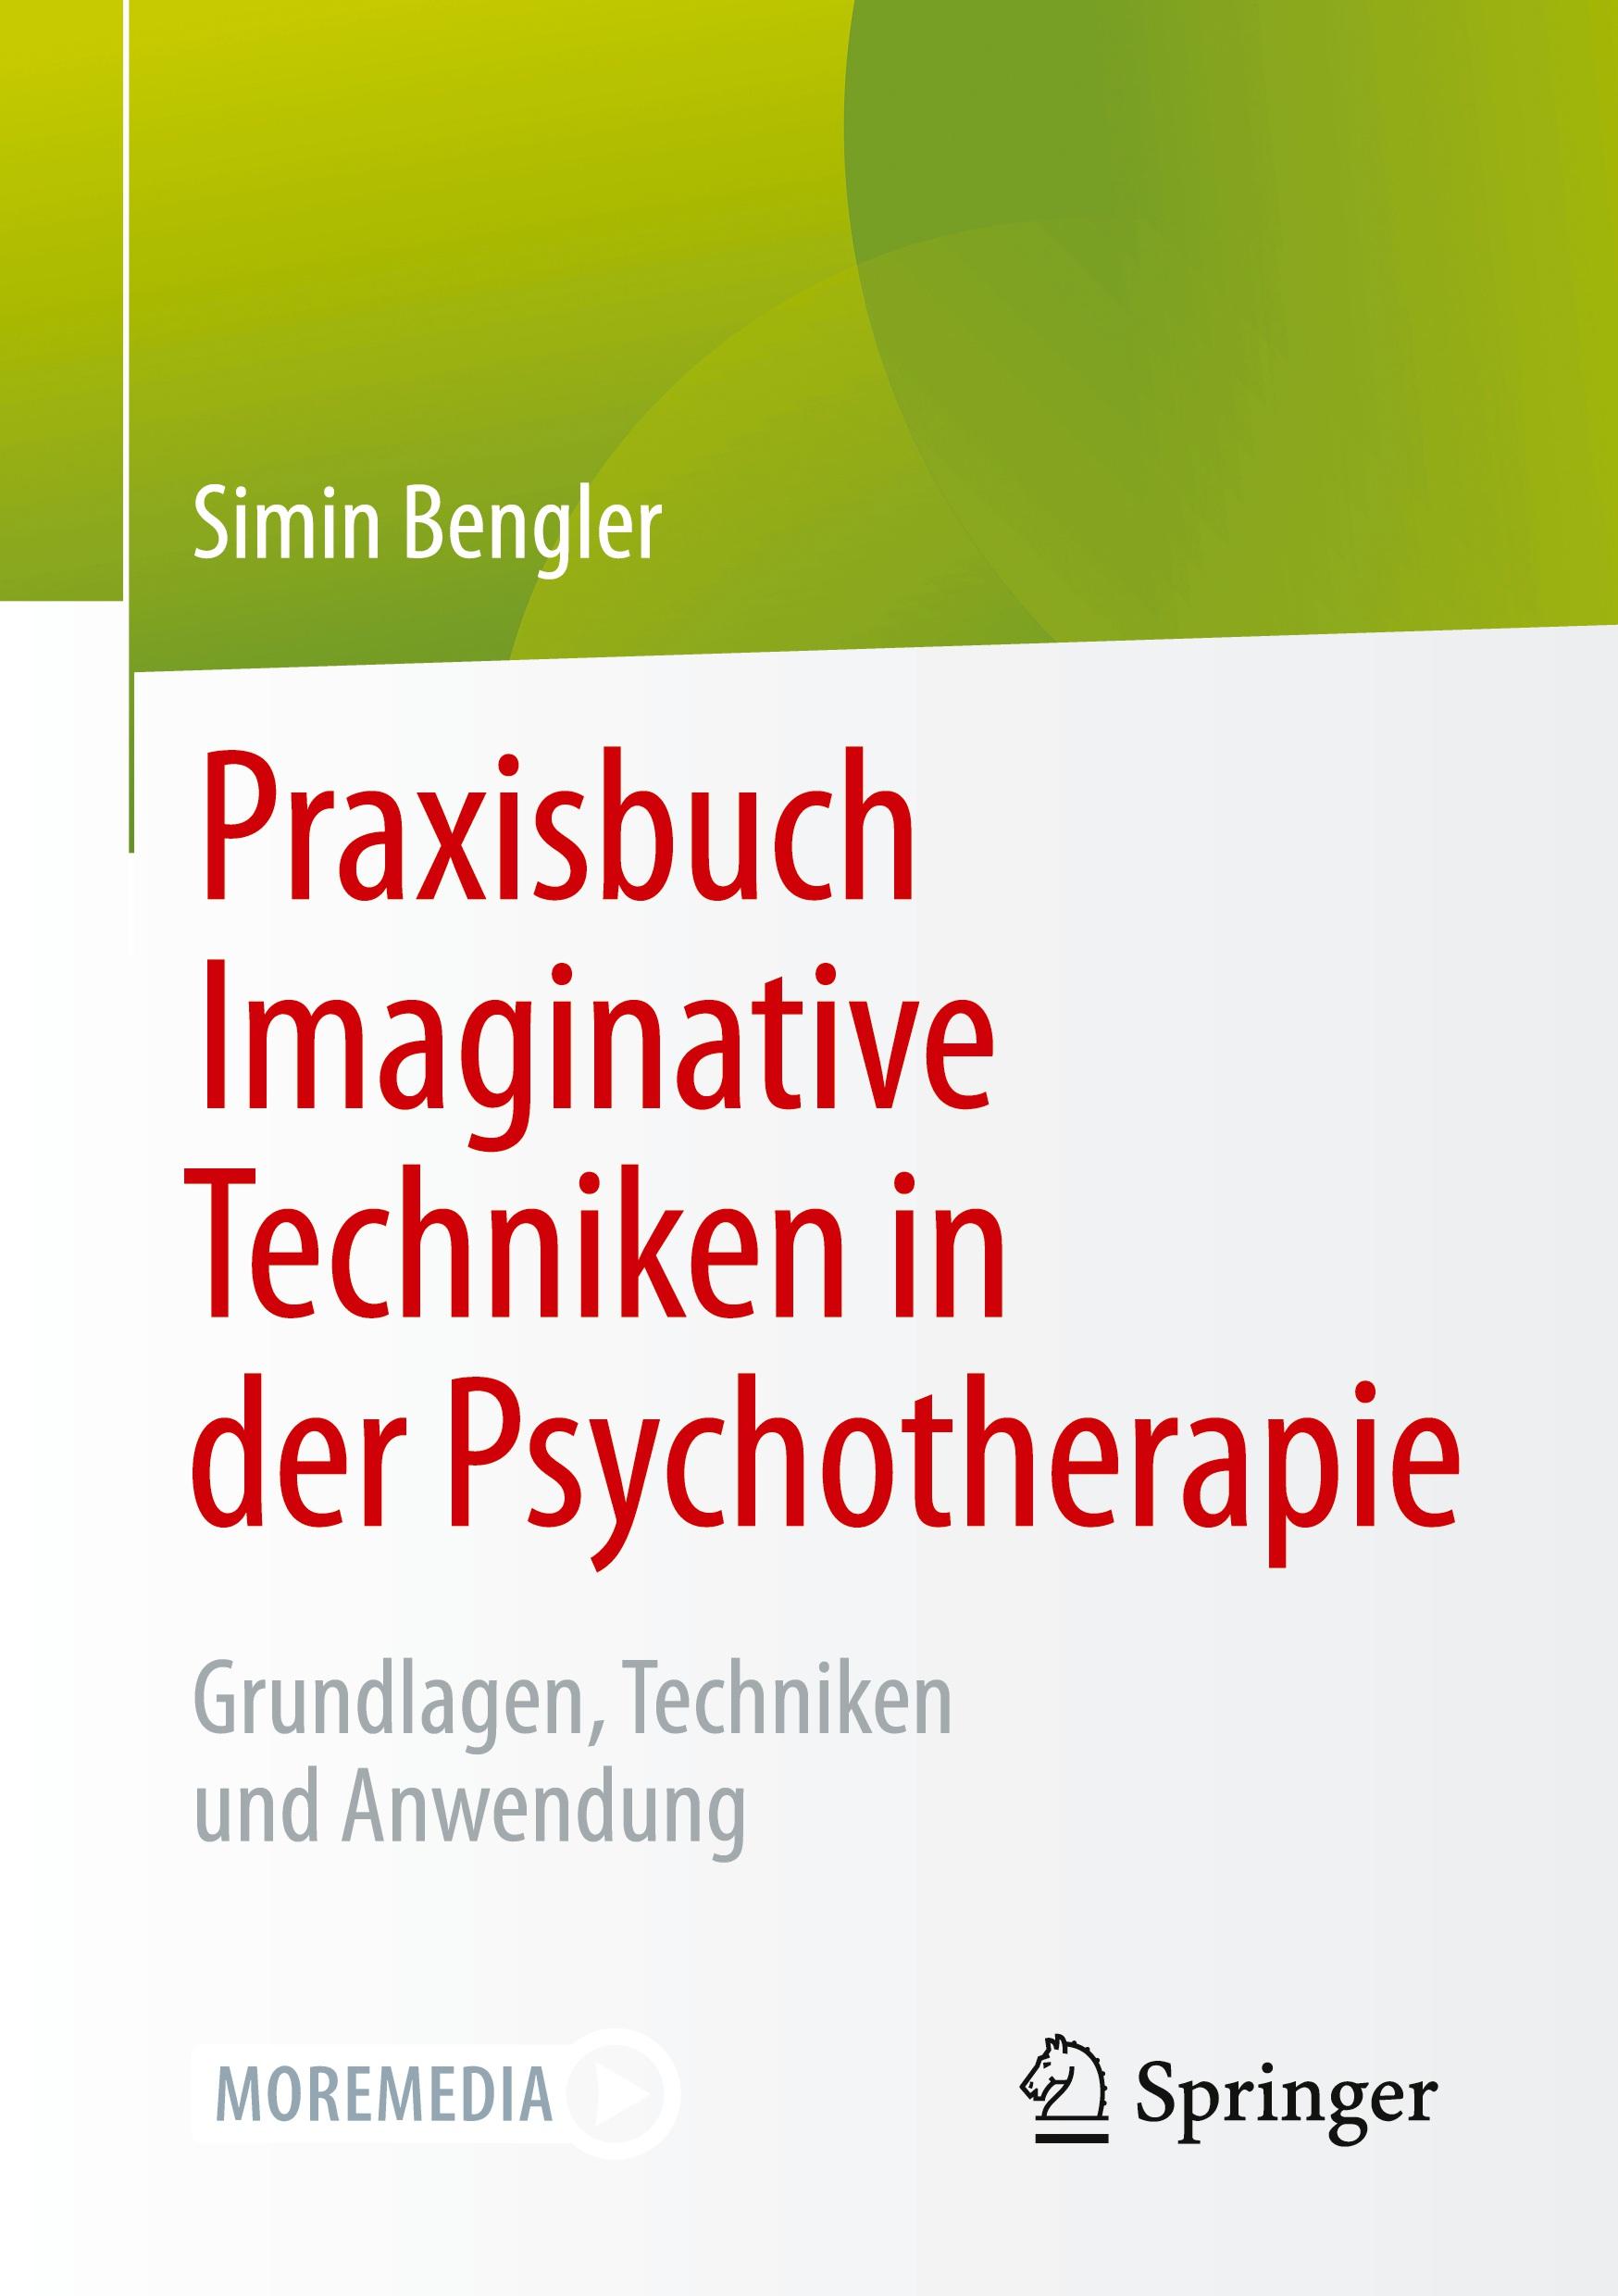 Praxisbuch Imaginative Techniken in der Psychotherapie - Bengler, Simin